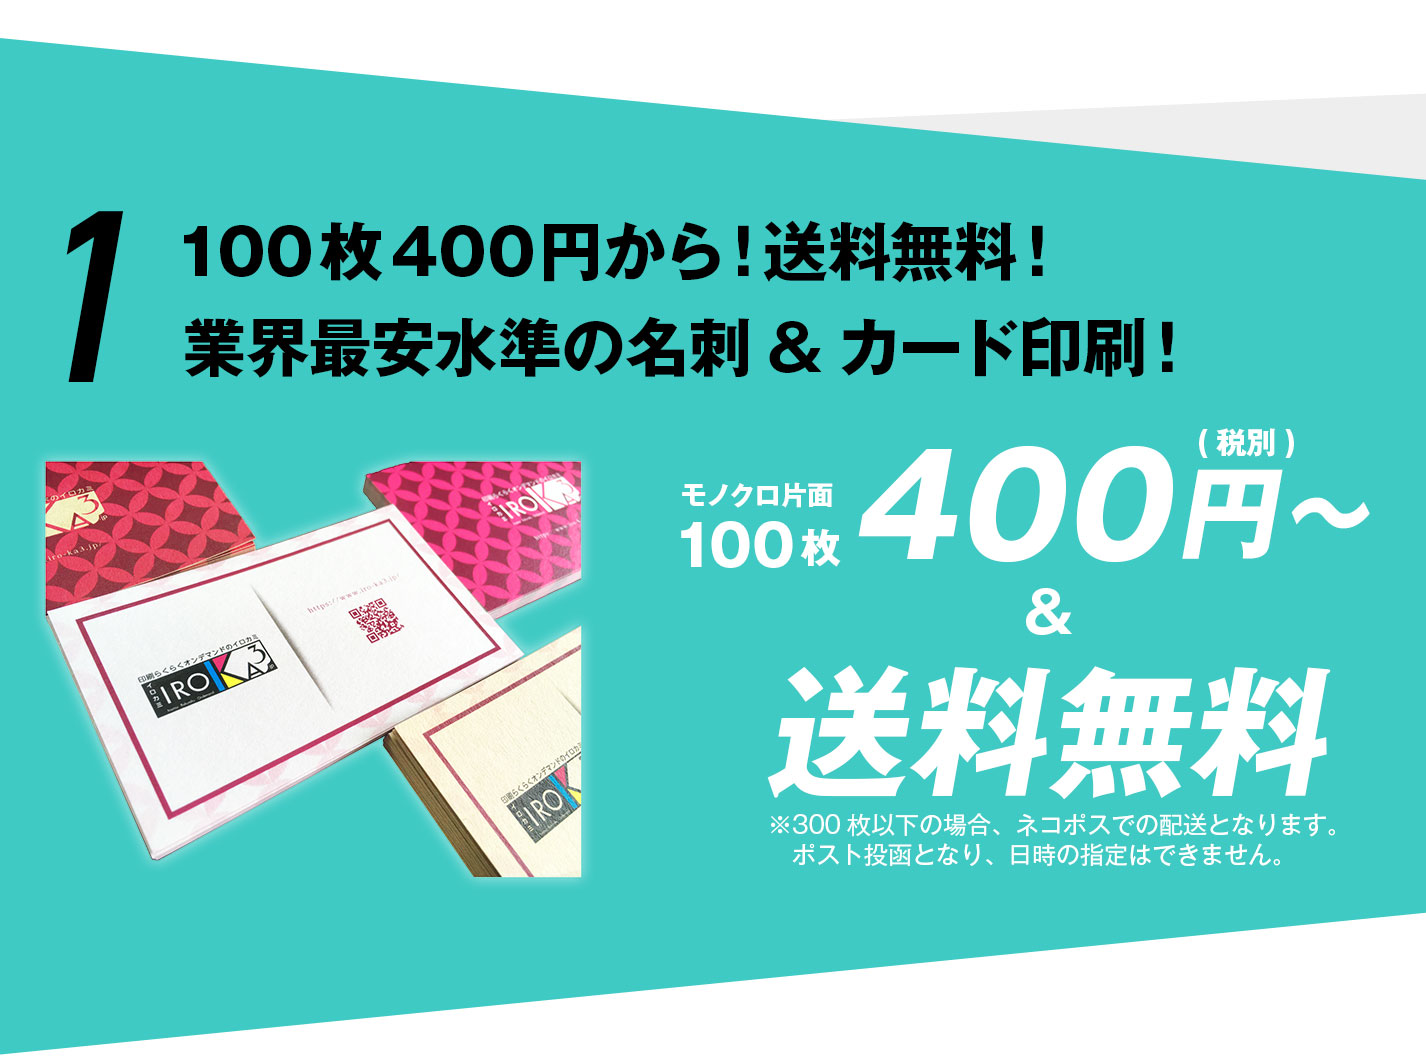 100枚400円から！送料無料！業界最安水準の名刺&カード印刷！
